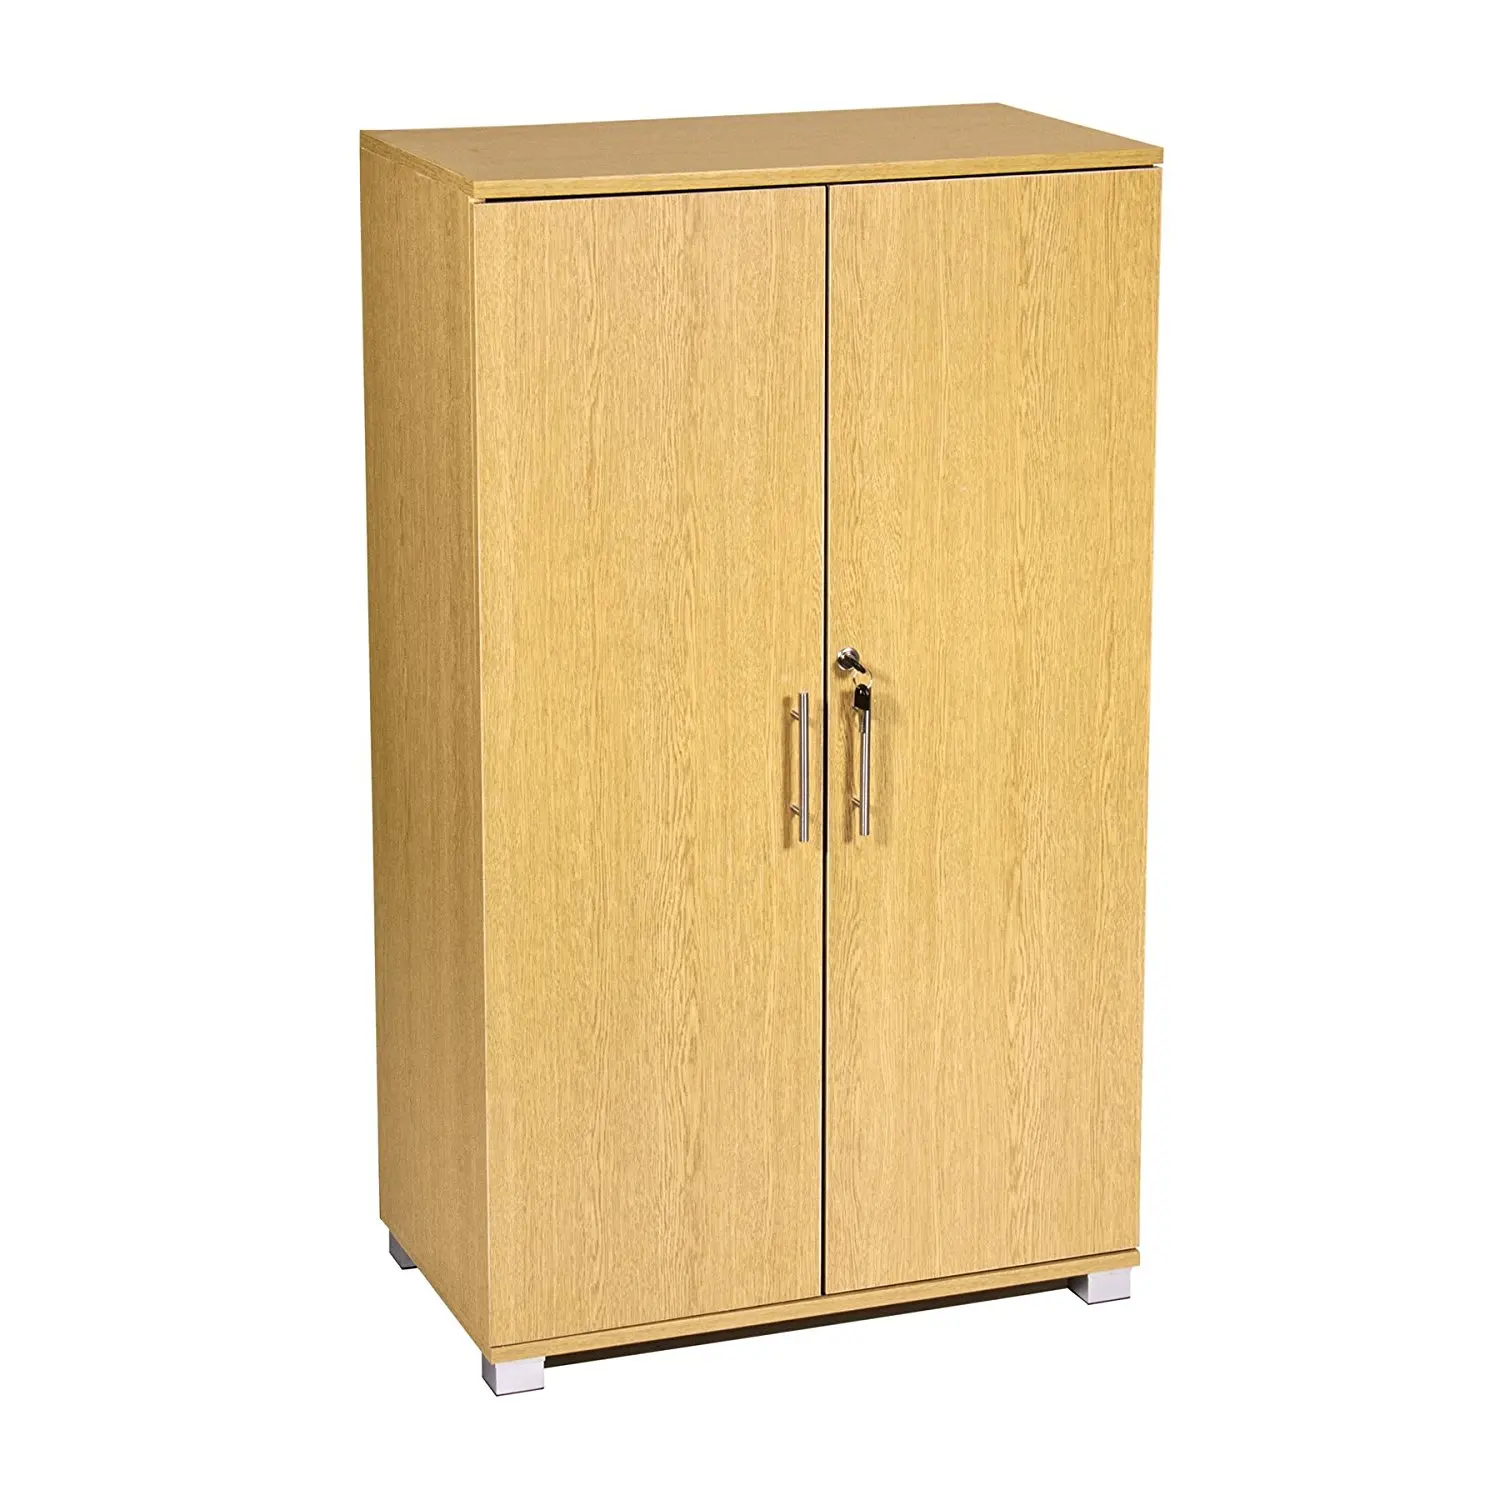 Cheap 30 Wide Storage Cabinet Find 30 Wide Storage Cabinet Deals